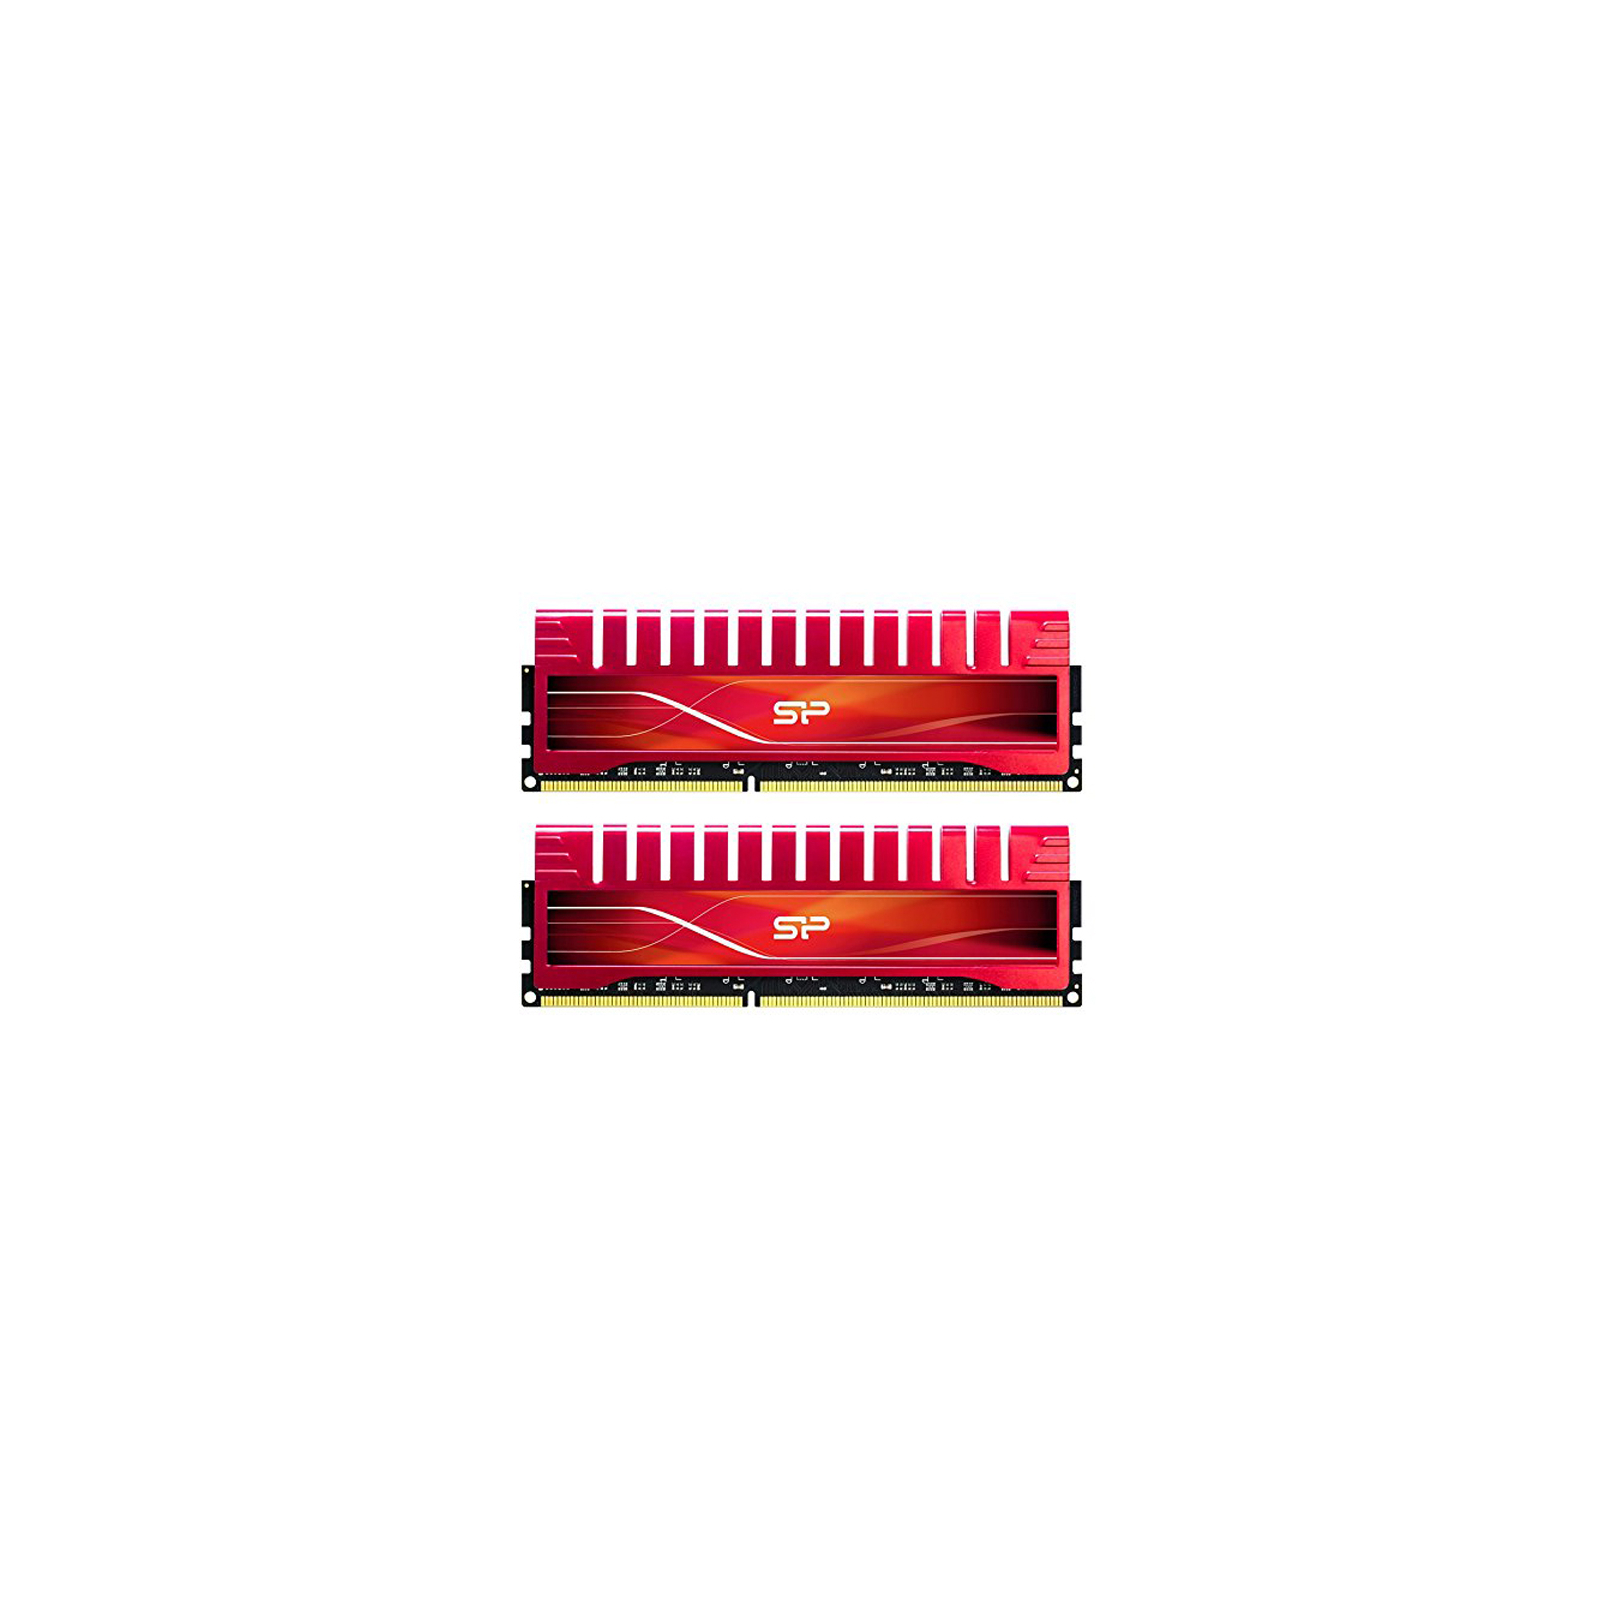 Модуль памяти для компьютера DDR3 8GB (2x4GB) 1600 MHz X-Power Silicon Power (SP008GXLYU16ANDA)